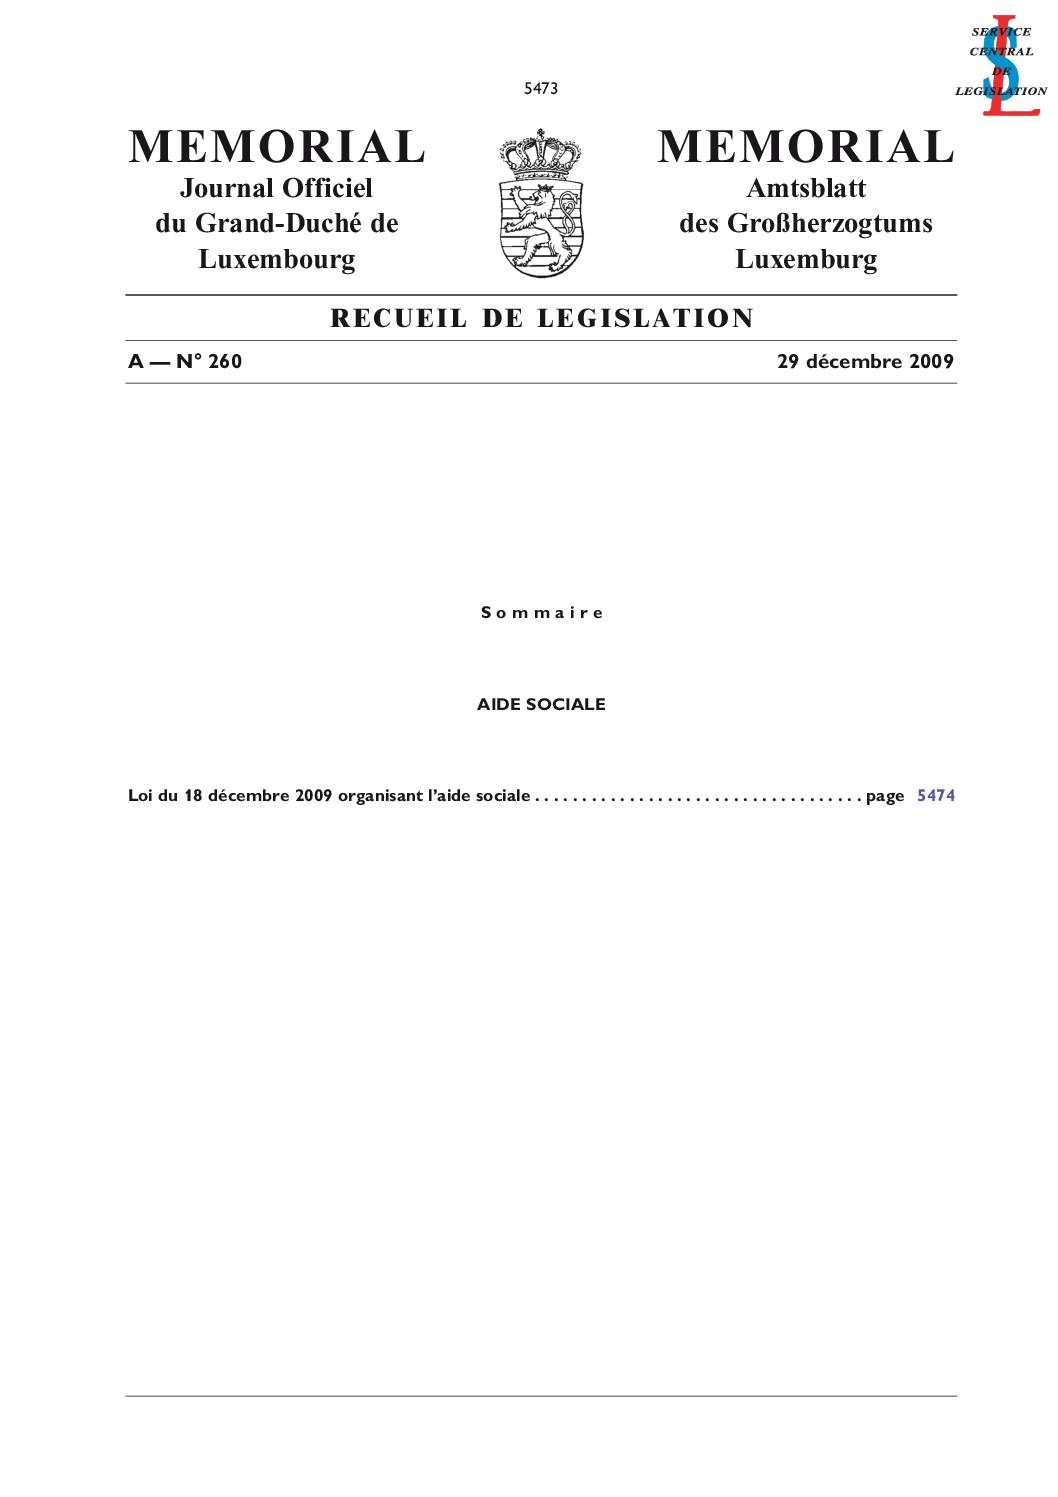 Loi du 18 décembre 2009 portant sur l'aide sociale